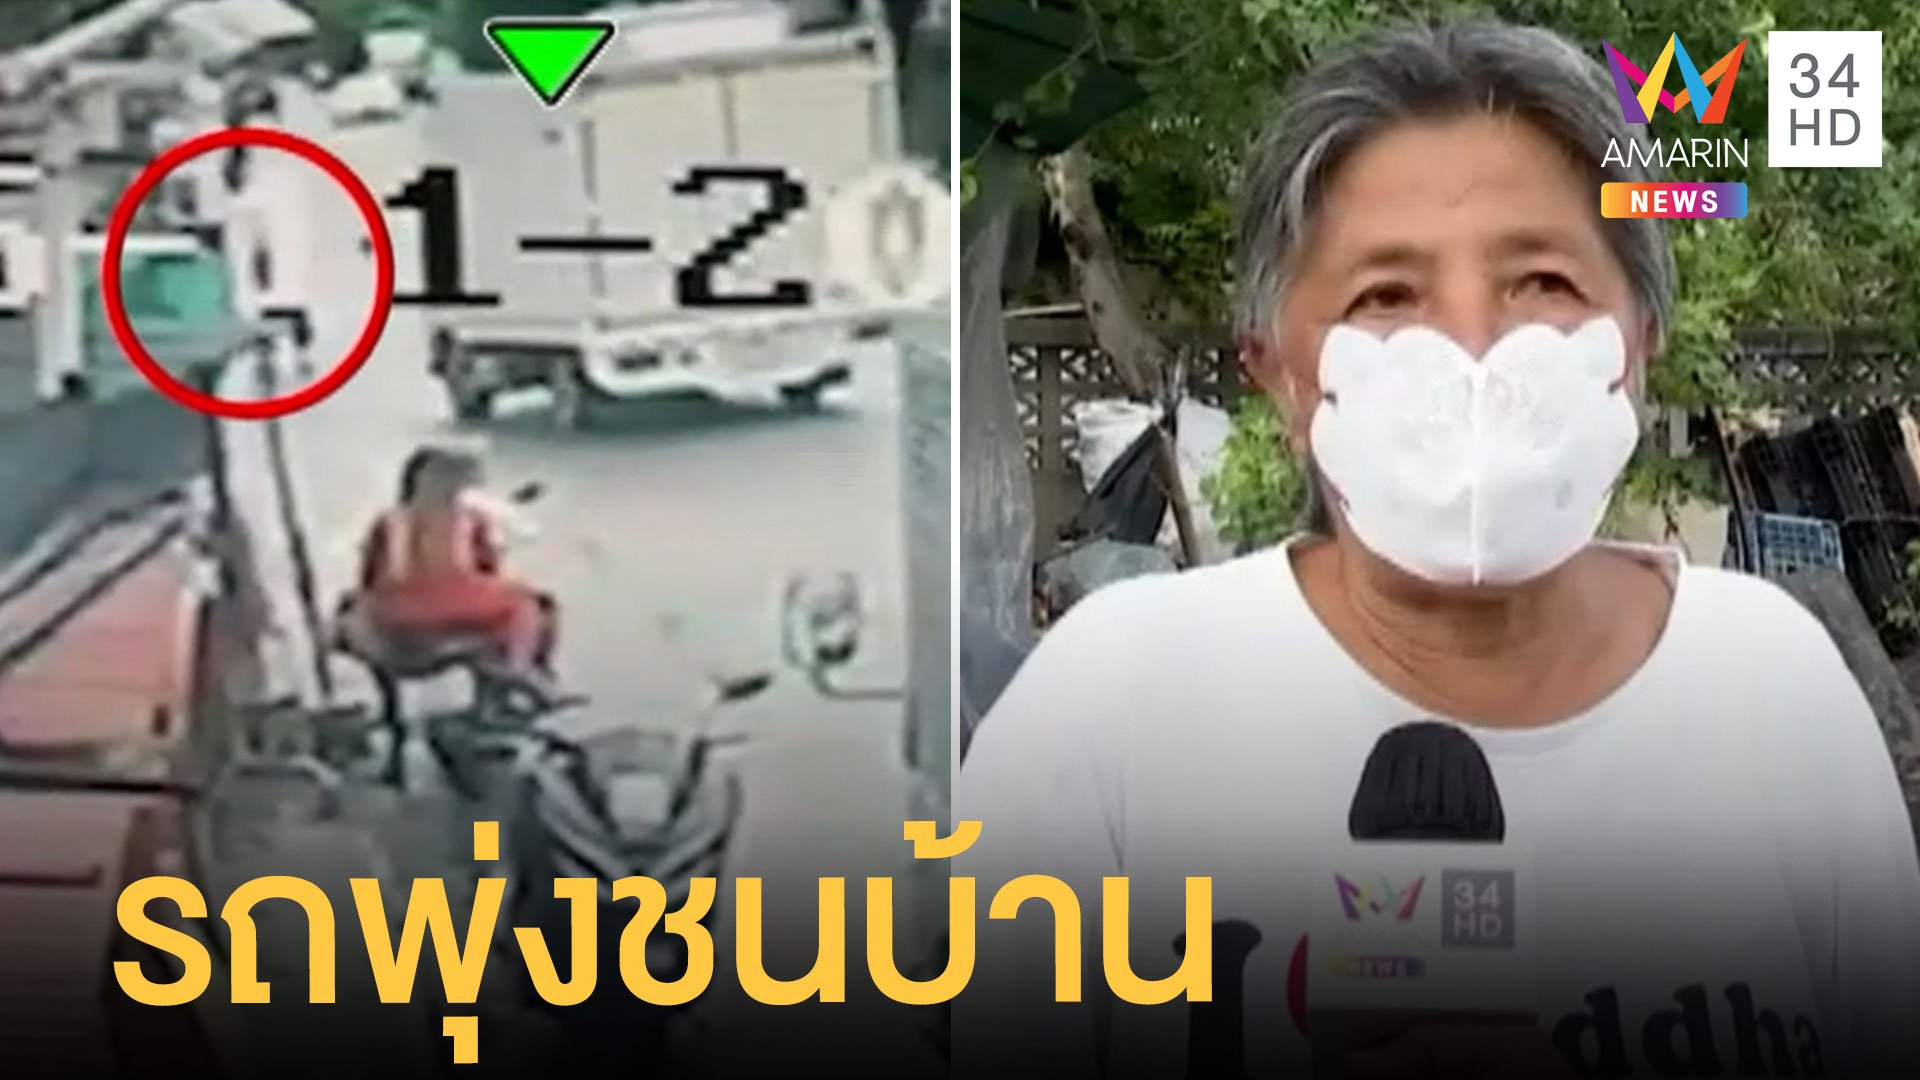 ระทึก รถบรรทุกพุ่งเข้าชนบ้านคน ชนคนเดินเท้าเสียชีวิต | ข่าวเที่ยงอมรินทร์ | 12 พ.ค. 65 | AMARIN TVHD34